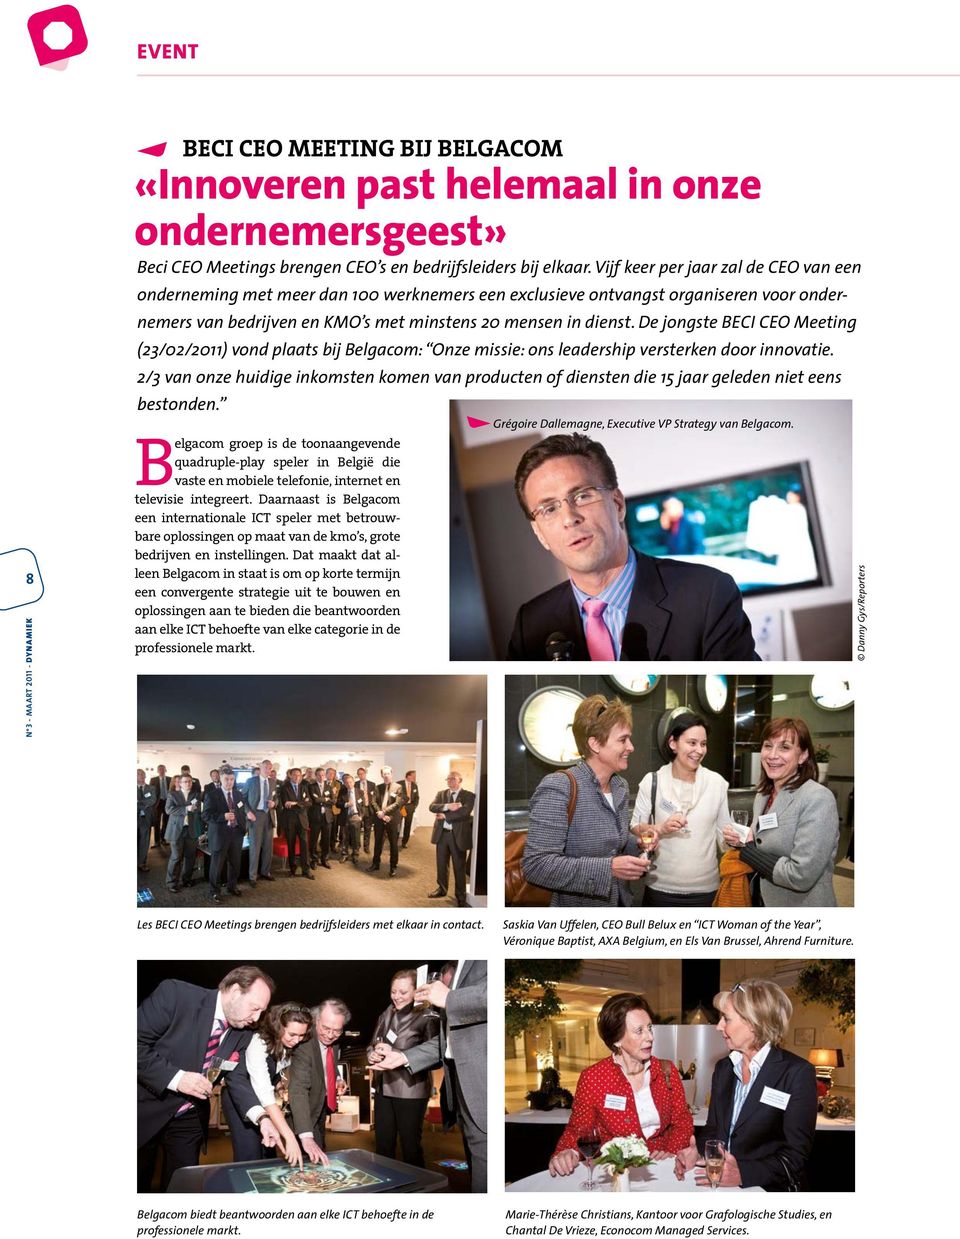 De jongste BECI CEO Meeting (23/02/2011) vond plaats bij Belgacom: Onze missie: ons leadership versterken door innovatie.